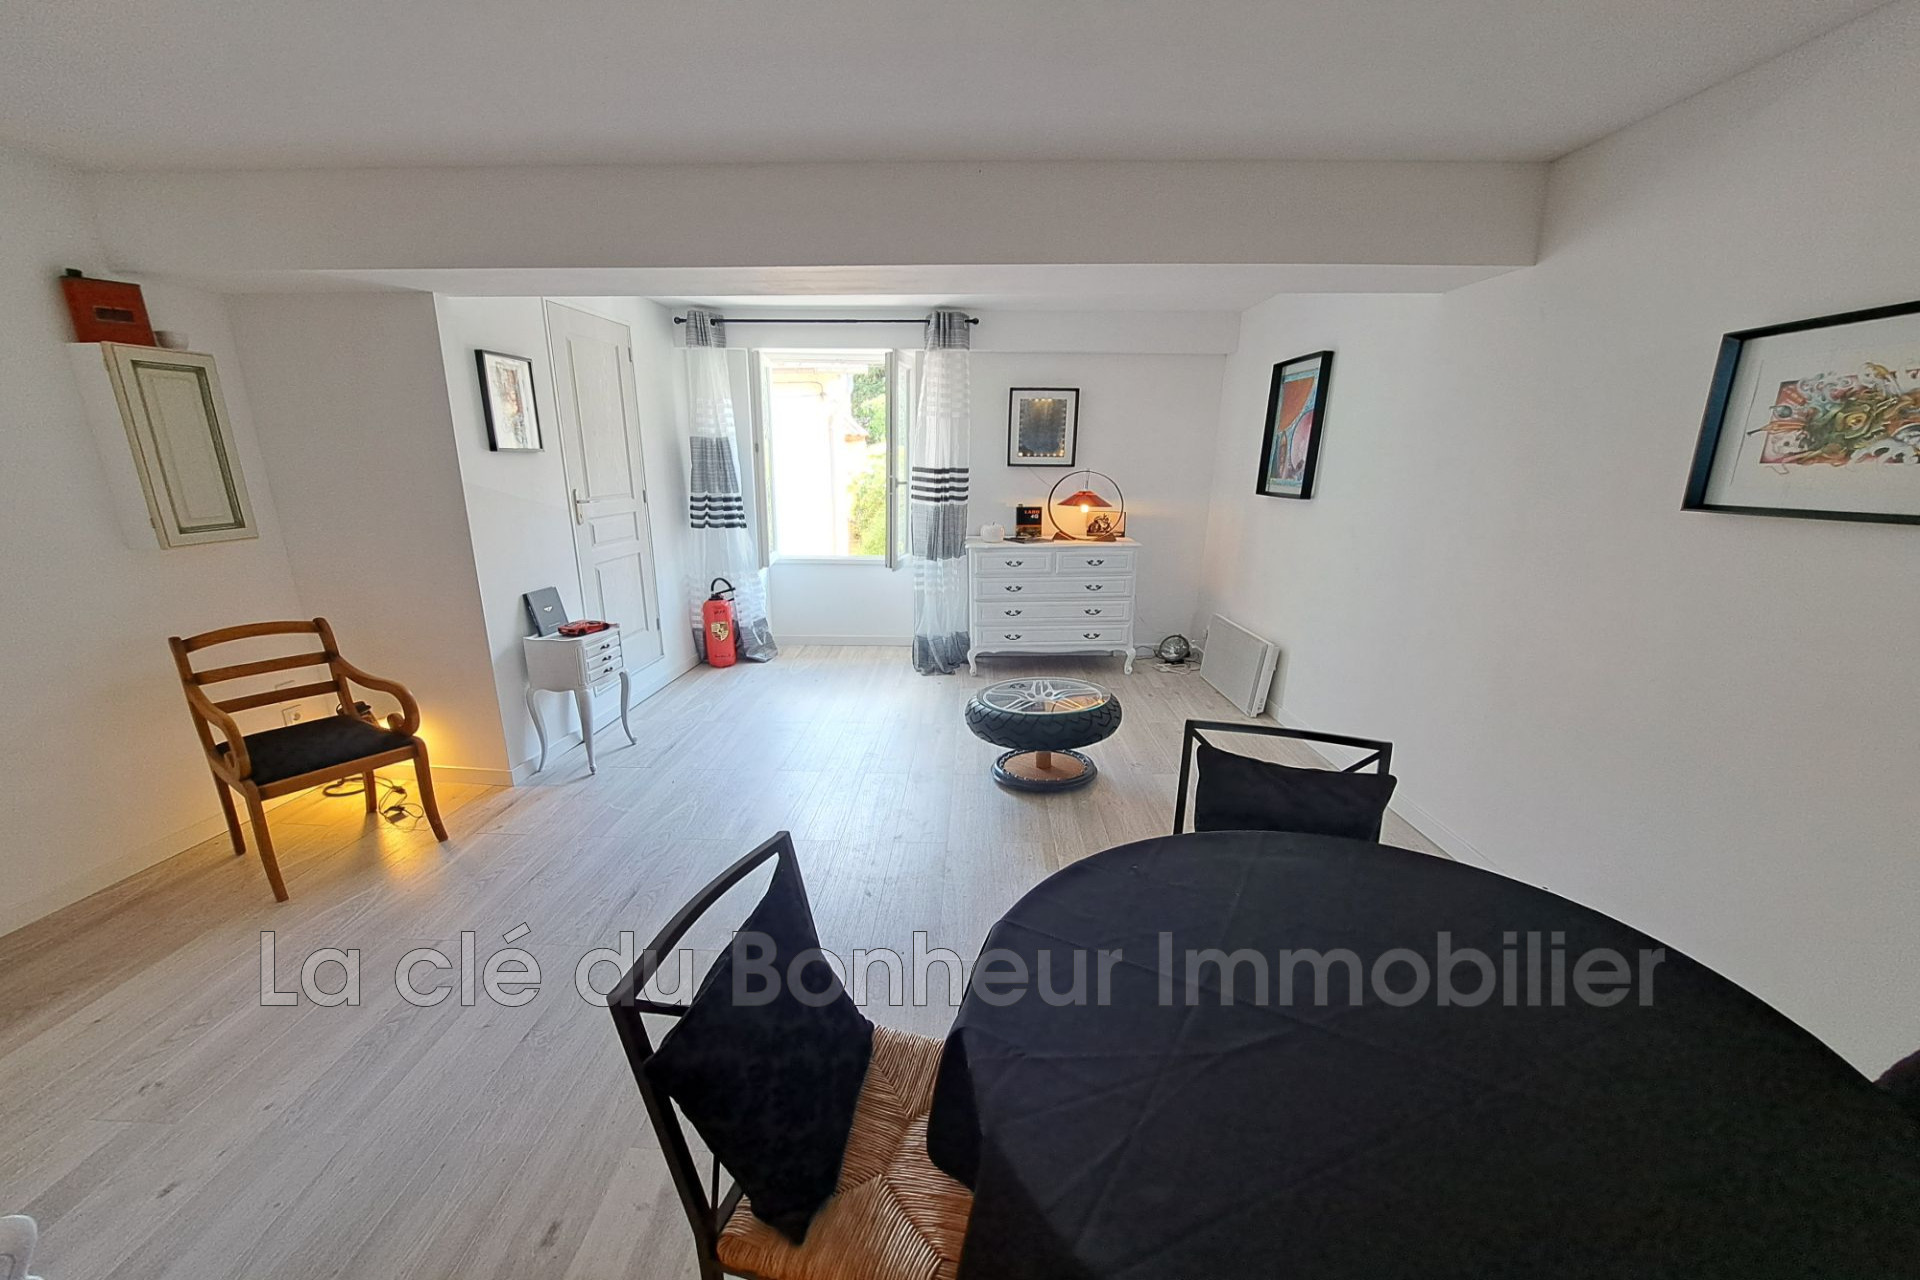 Vente Appartement 66m² 3 Pièces à Montagnac-Montpezat (04500) - La Clé Du Bonheur Immobilier